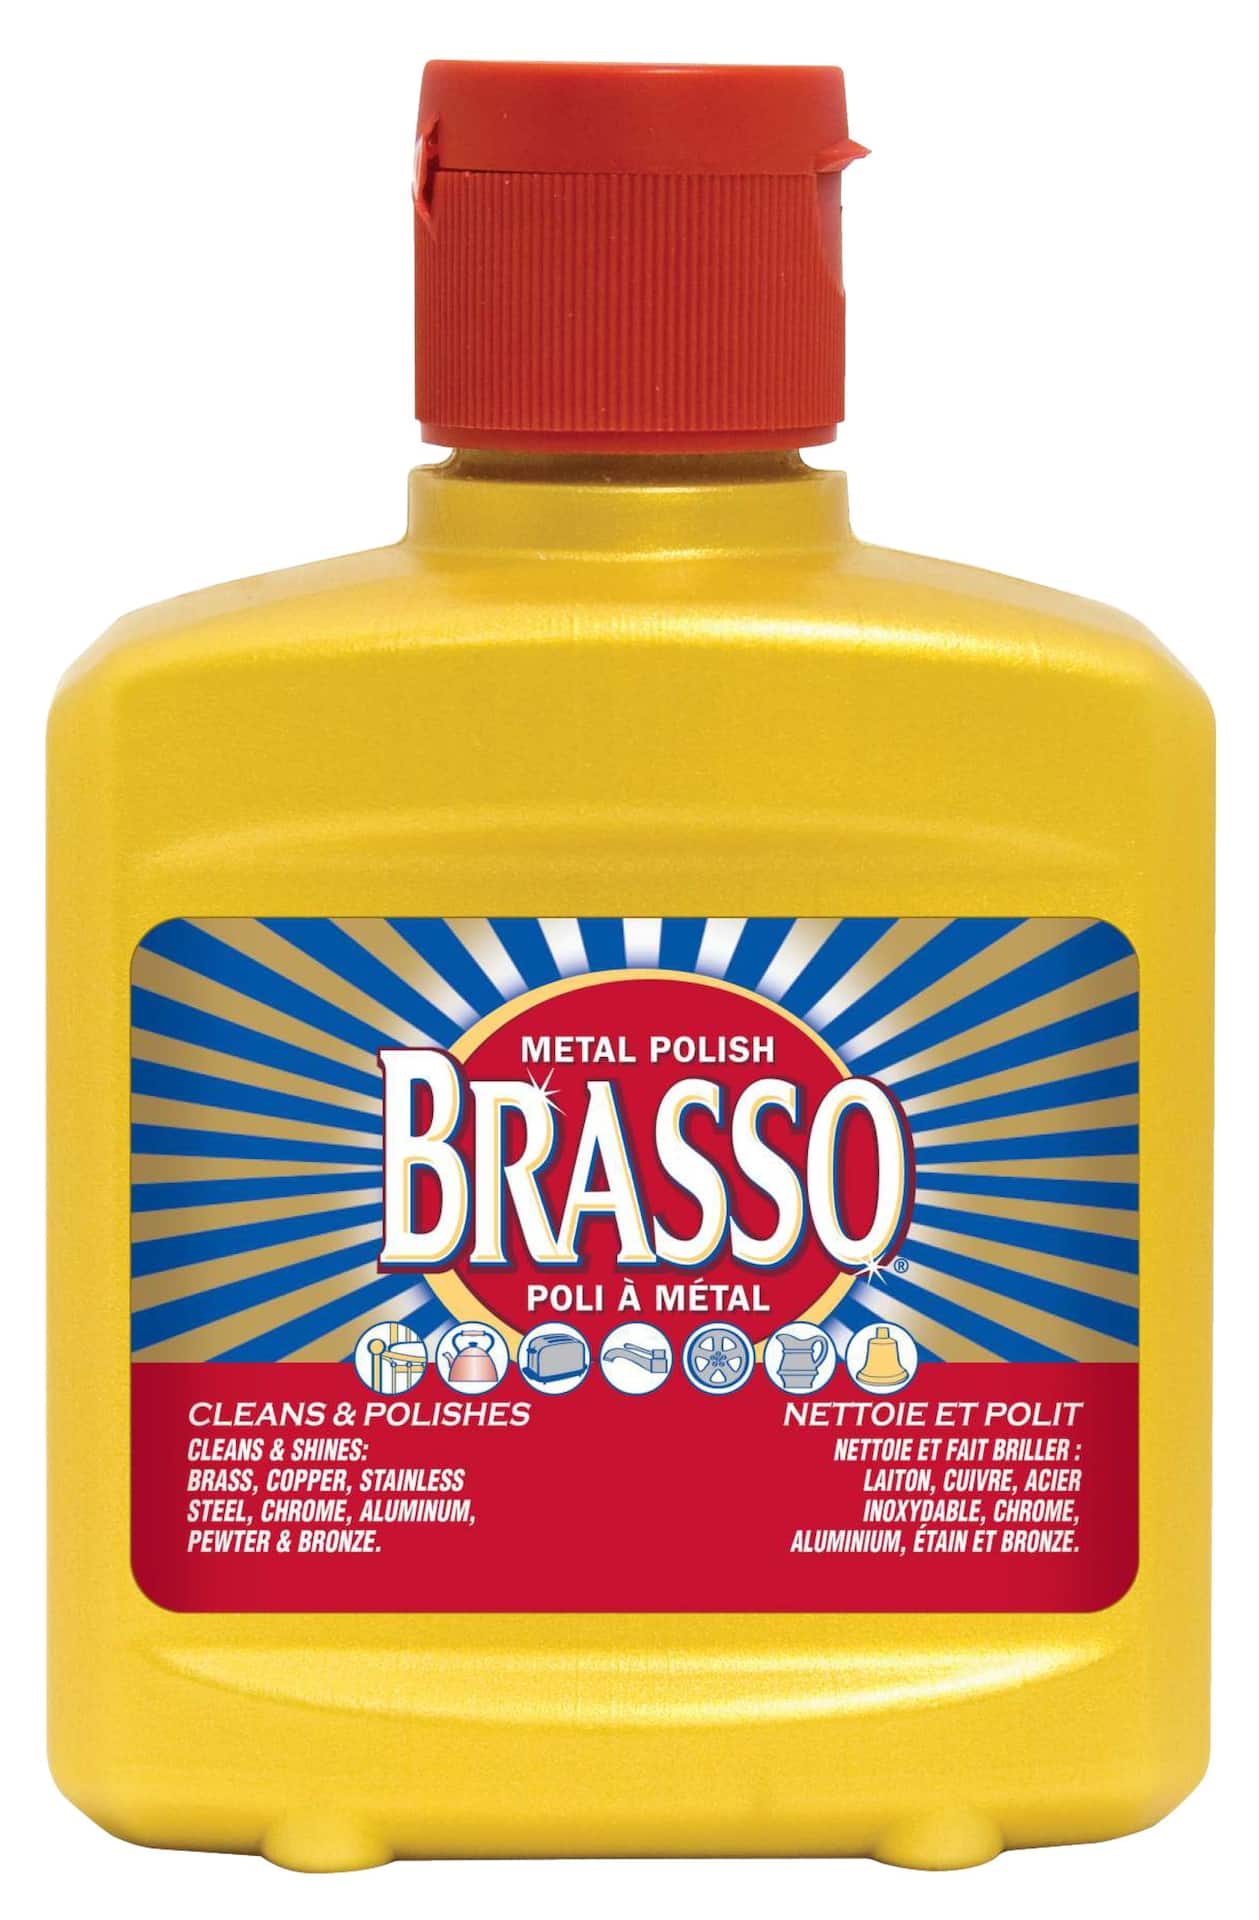  Brasso Metal Polish, 8 Oz Bottle for Brass, Copper, Stainless,  Chrome, Aluminum, Pewter & Bronze, 8 Oz (Pack of 2) : Health & Household